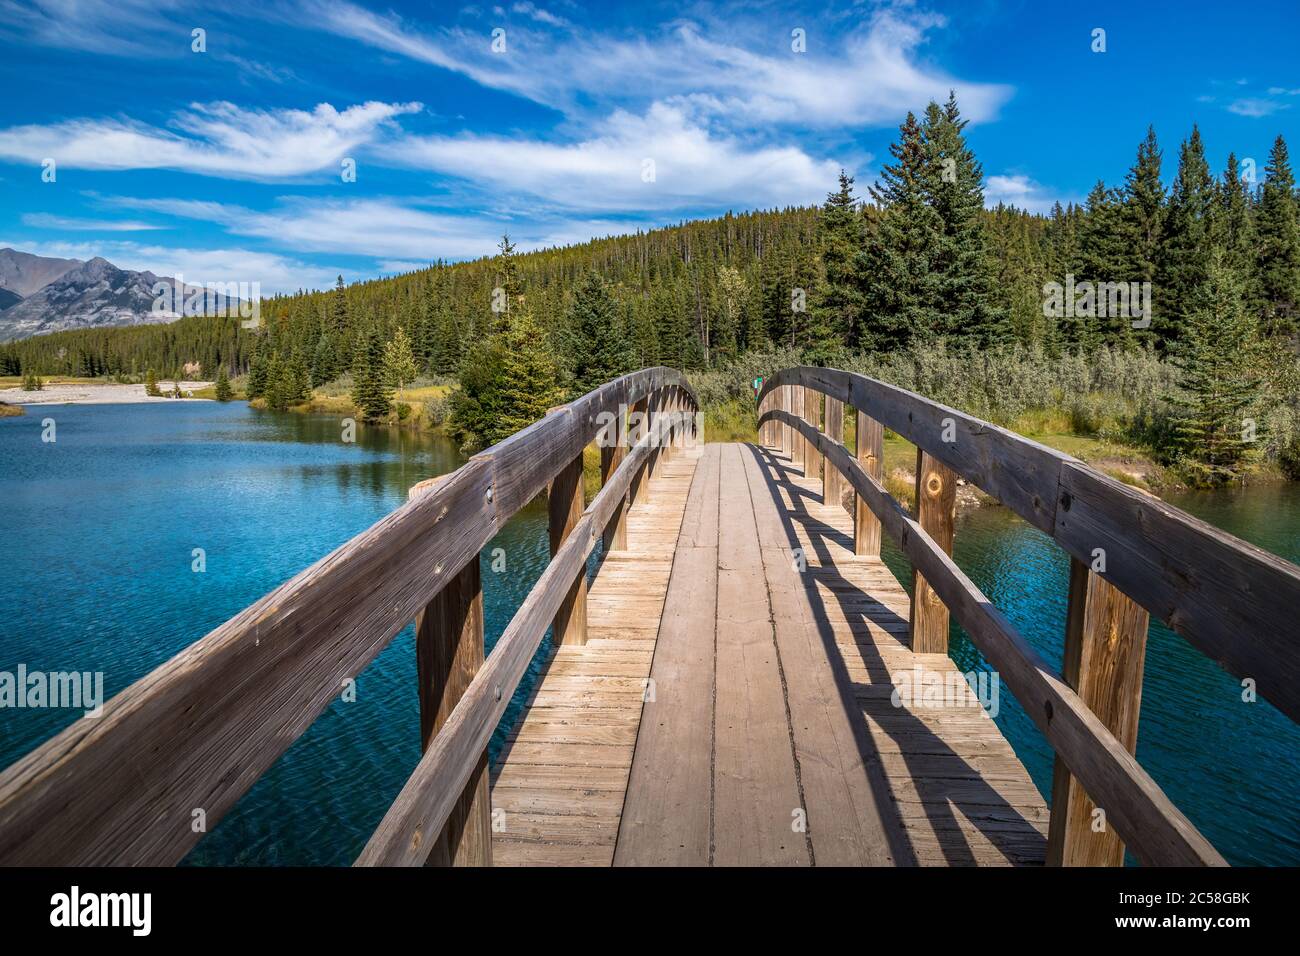 Magnifique pont en bois qui traverse les étangs de Cascade avec le mont Astley en arrière-plan, parc national Banff, Alberta, Canada Banque D'Images